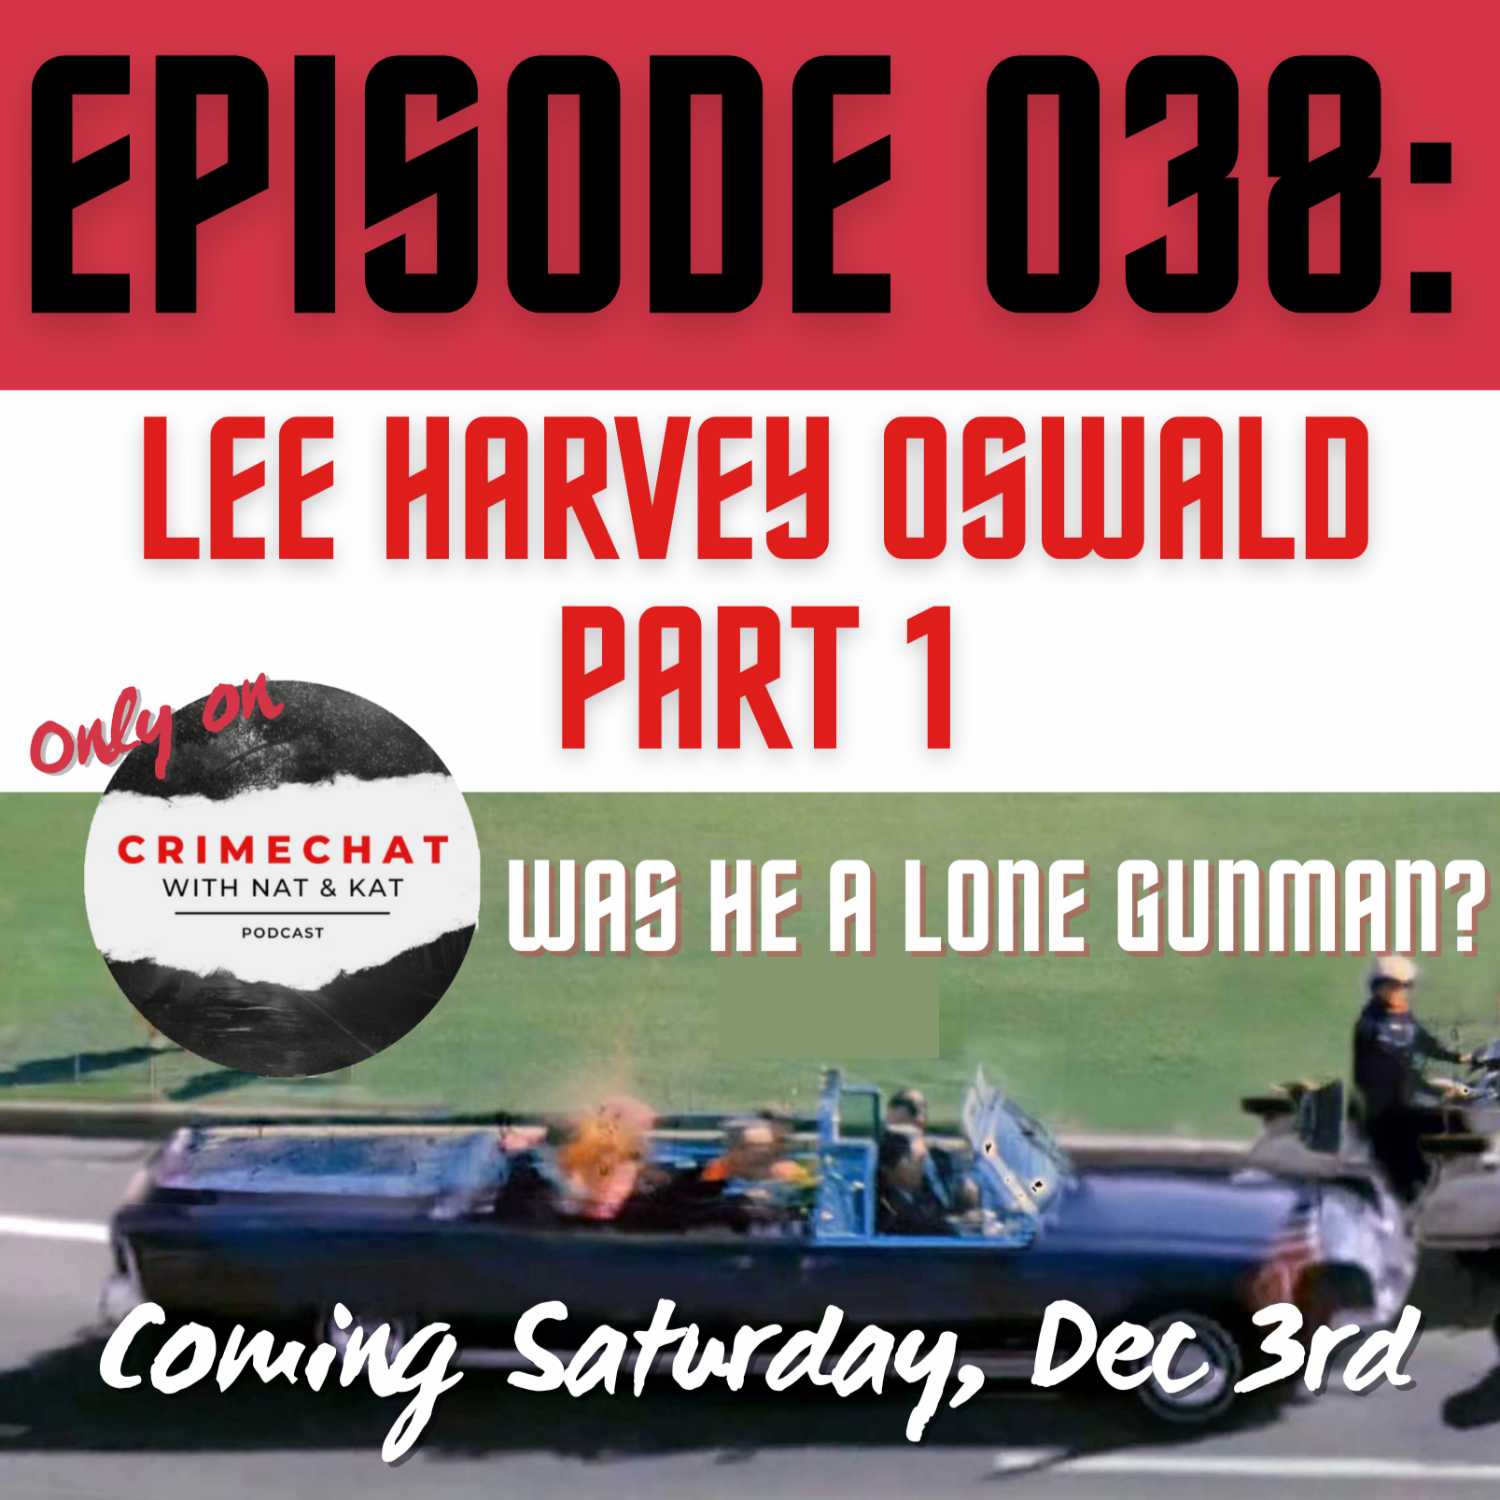 Episode 038: Lee Harvey Oswald - Part 1